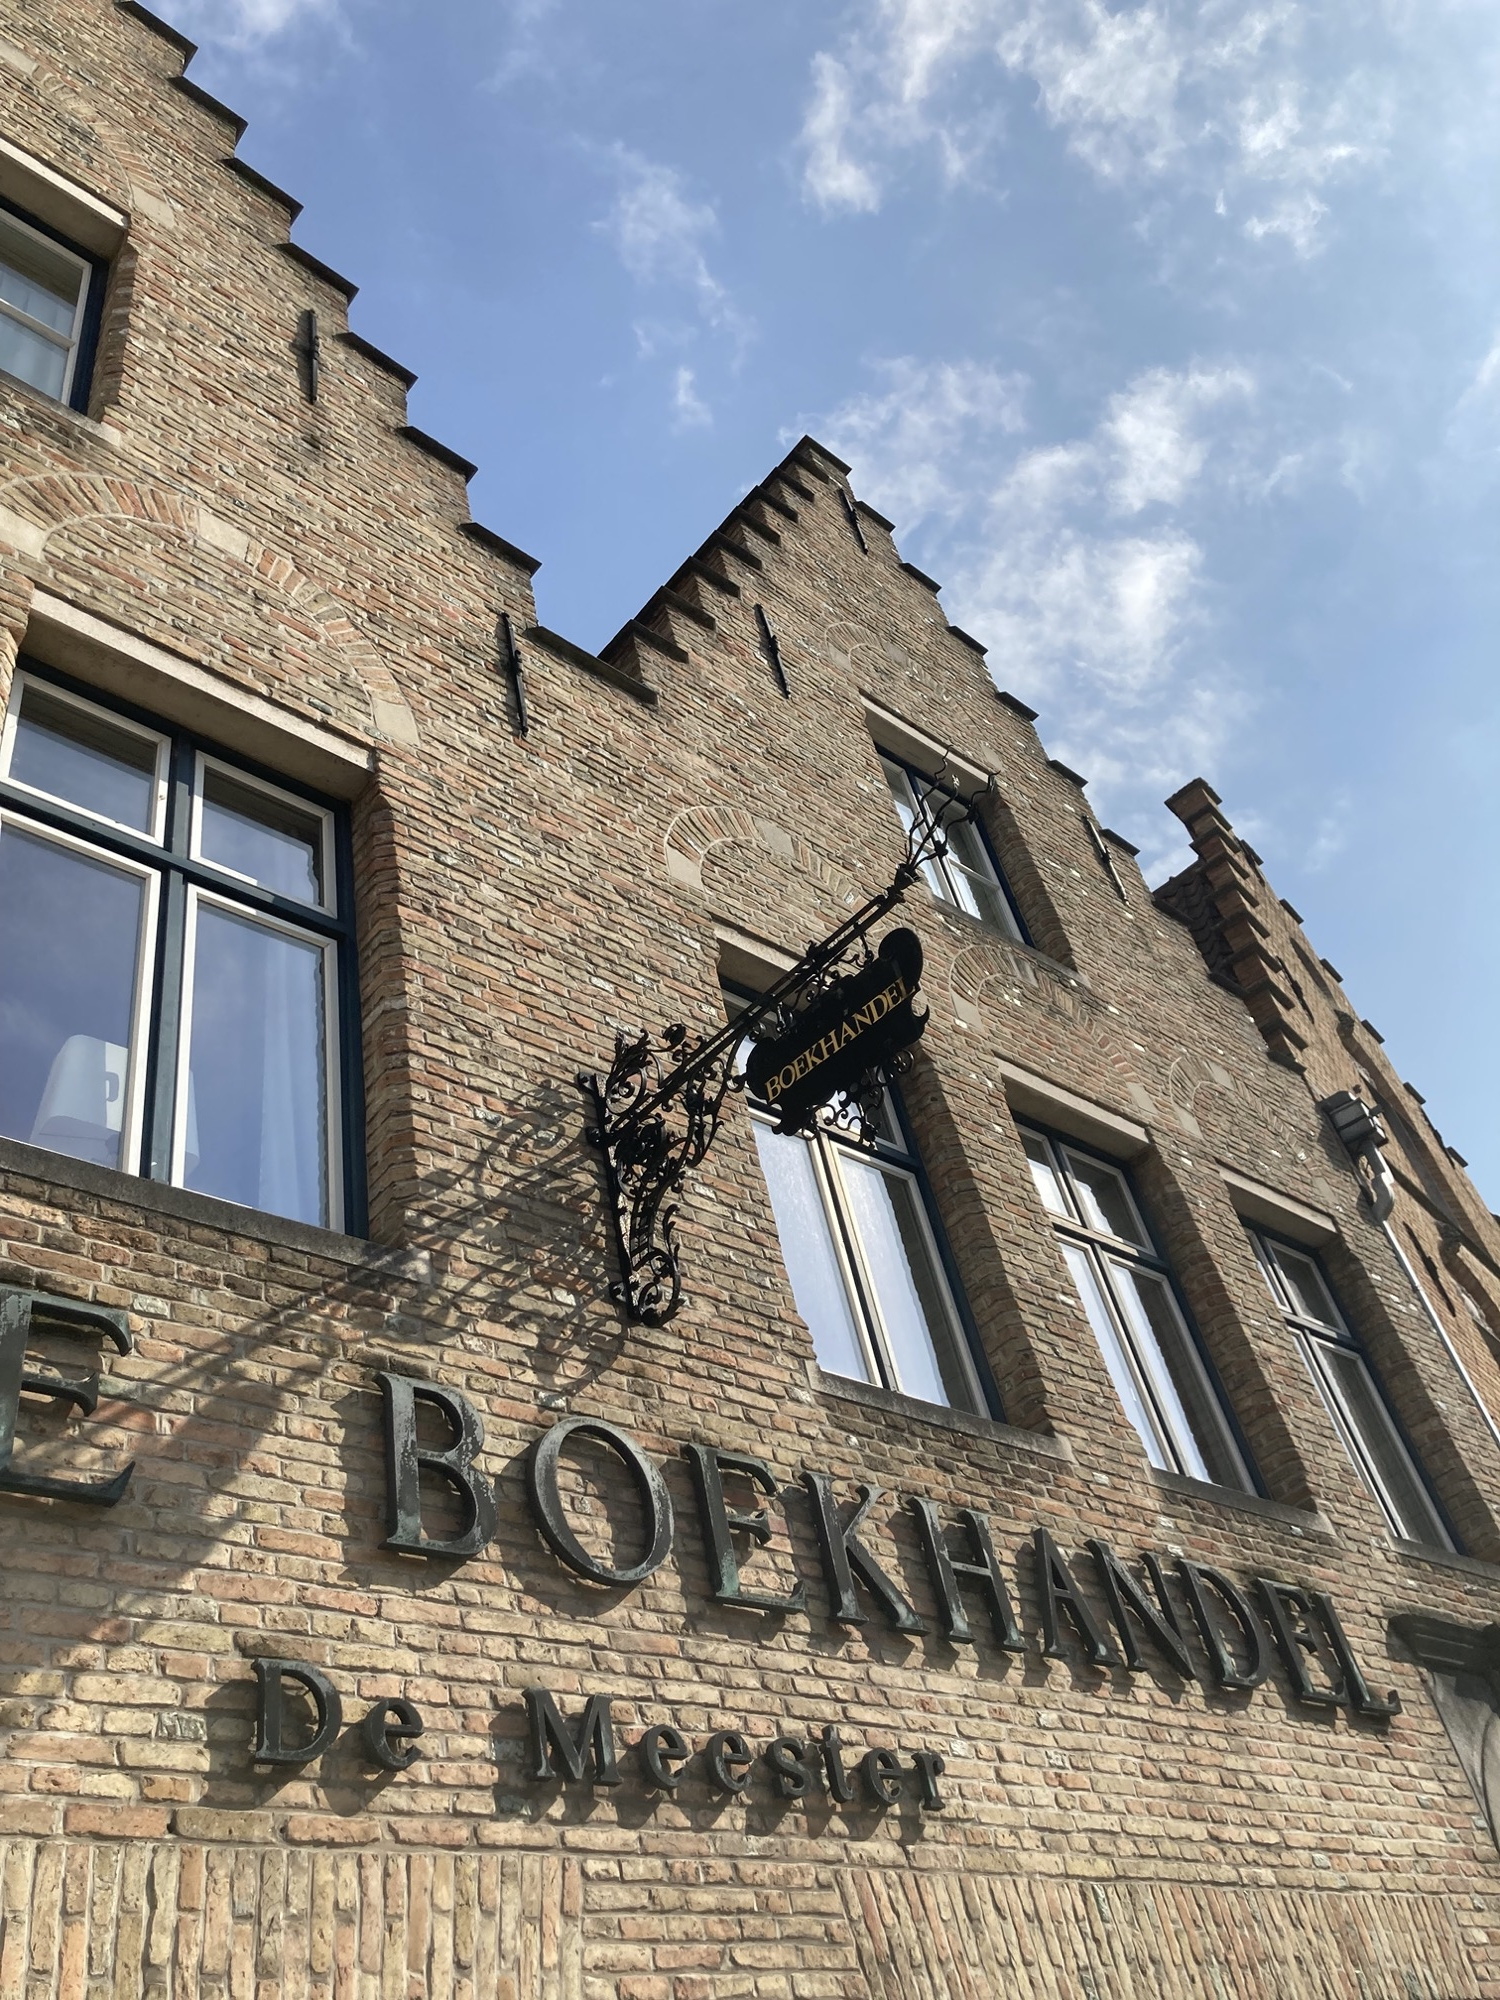 braunes Ziegelgebäude mit treppenförmigen Ziergiebeln, ein Wappen und eine Metallschrift auf dem Haus nennen den Namen „Boekhandel De Meester“